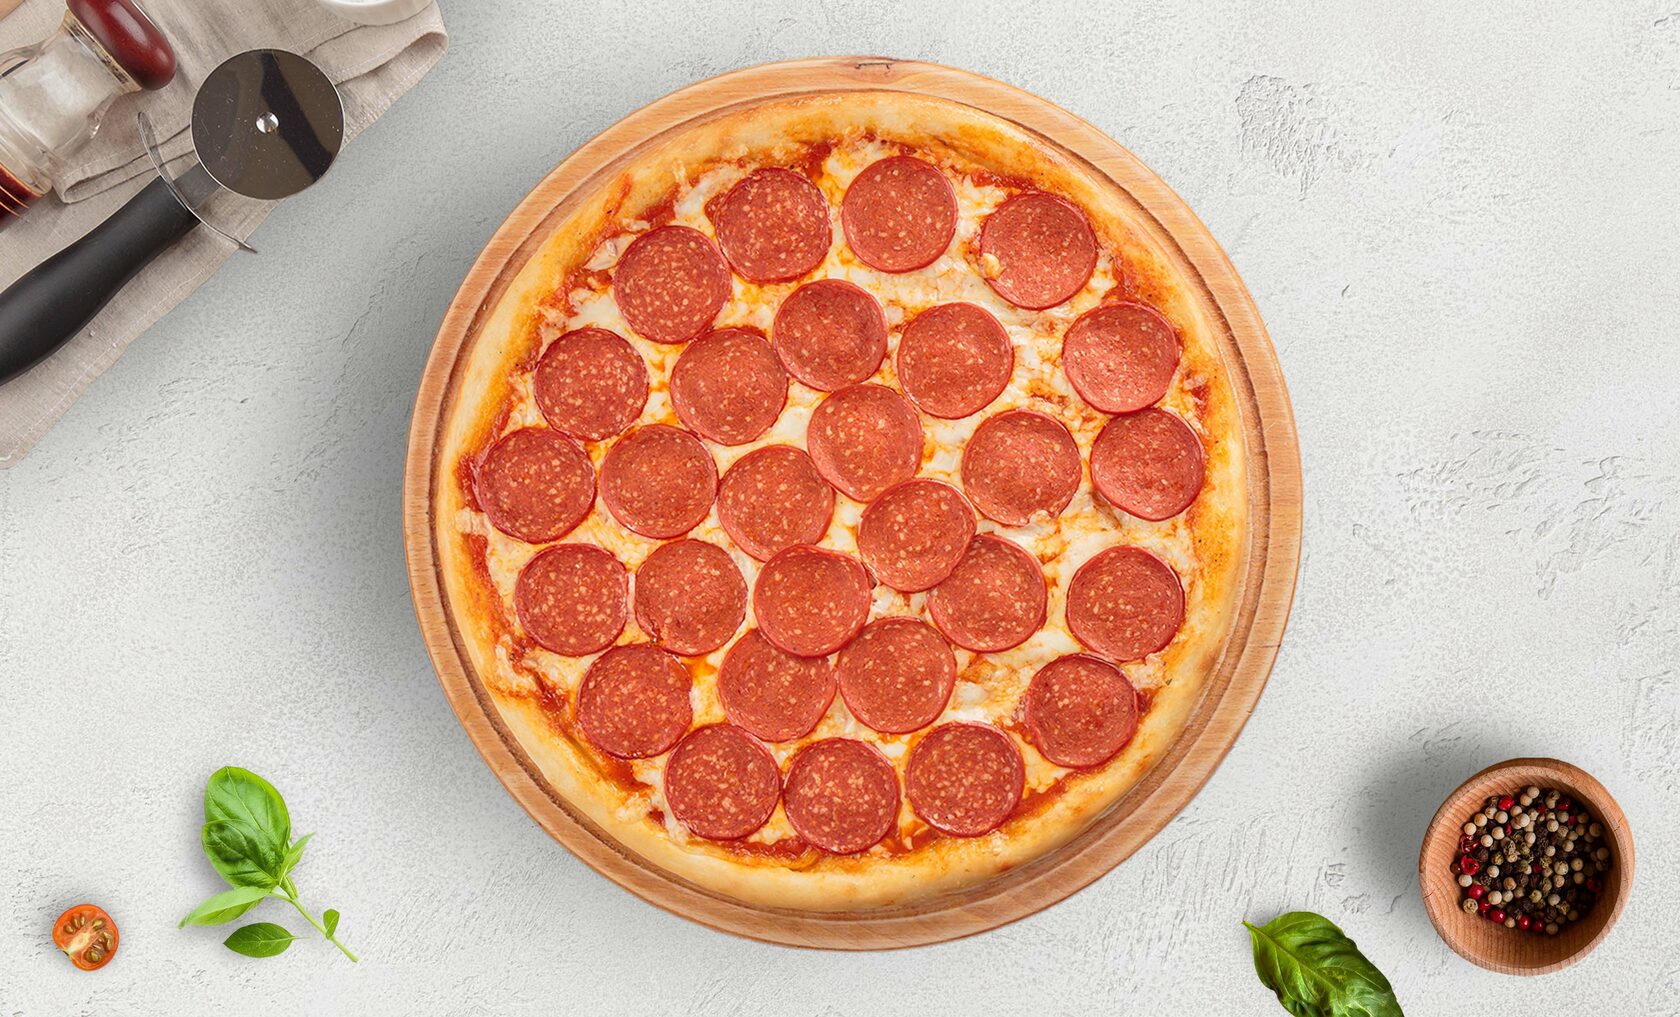 я здесь для обучения мне нужна половина из четырех пицц пепперони хорошая фото 19